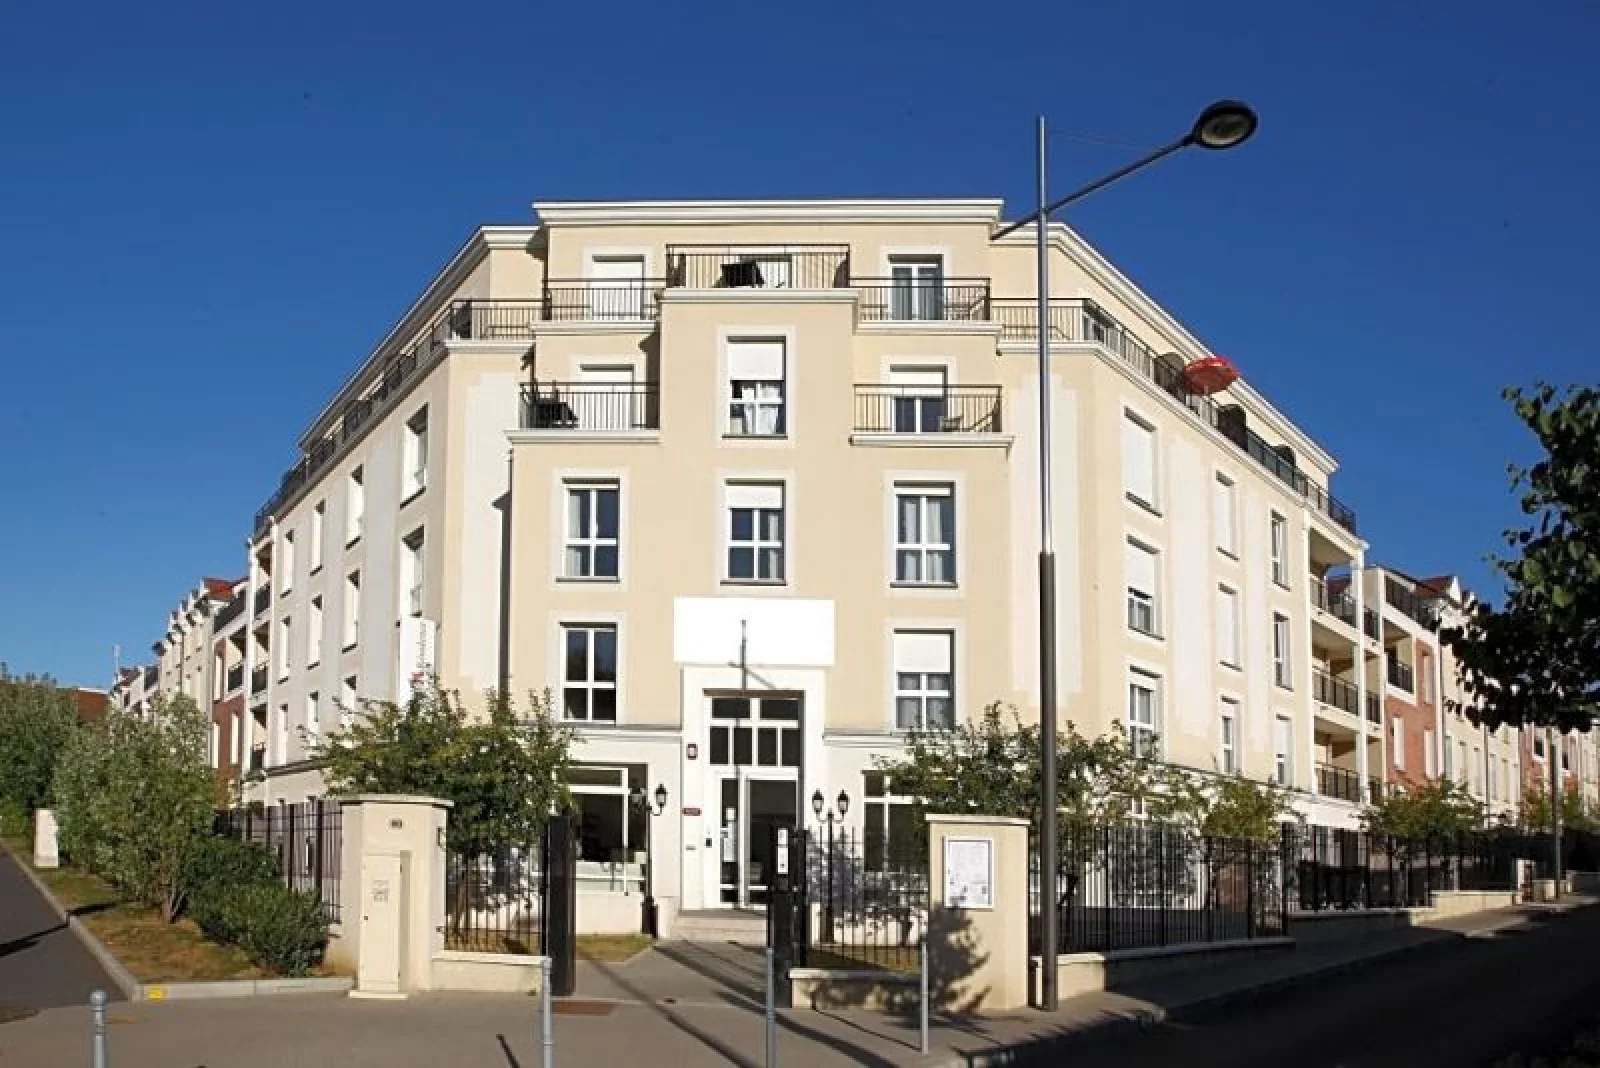 Location appartement meublé 2 pièces 45m² (Paris Est - Bry s/ Marne)